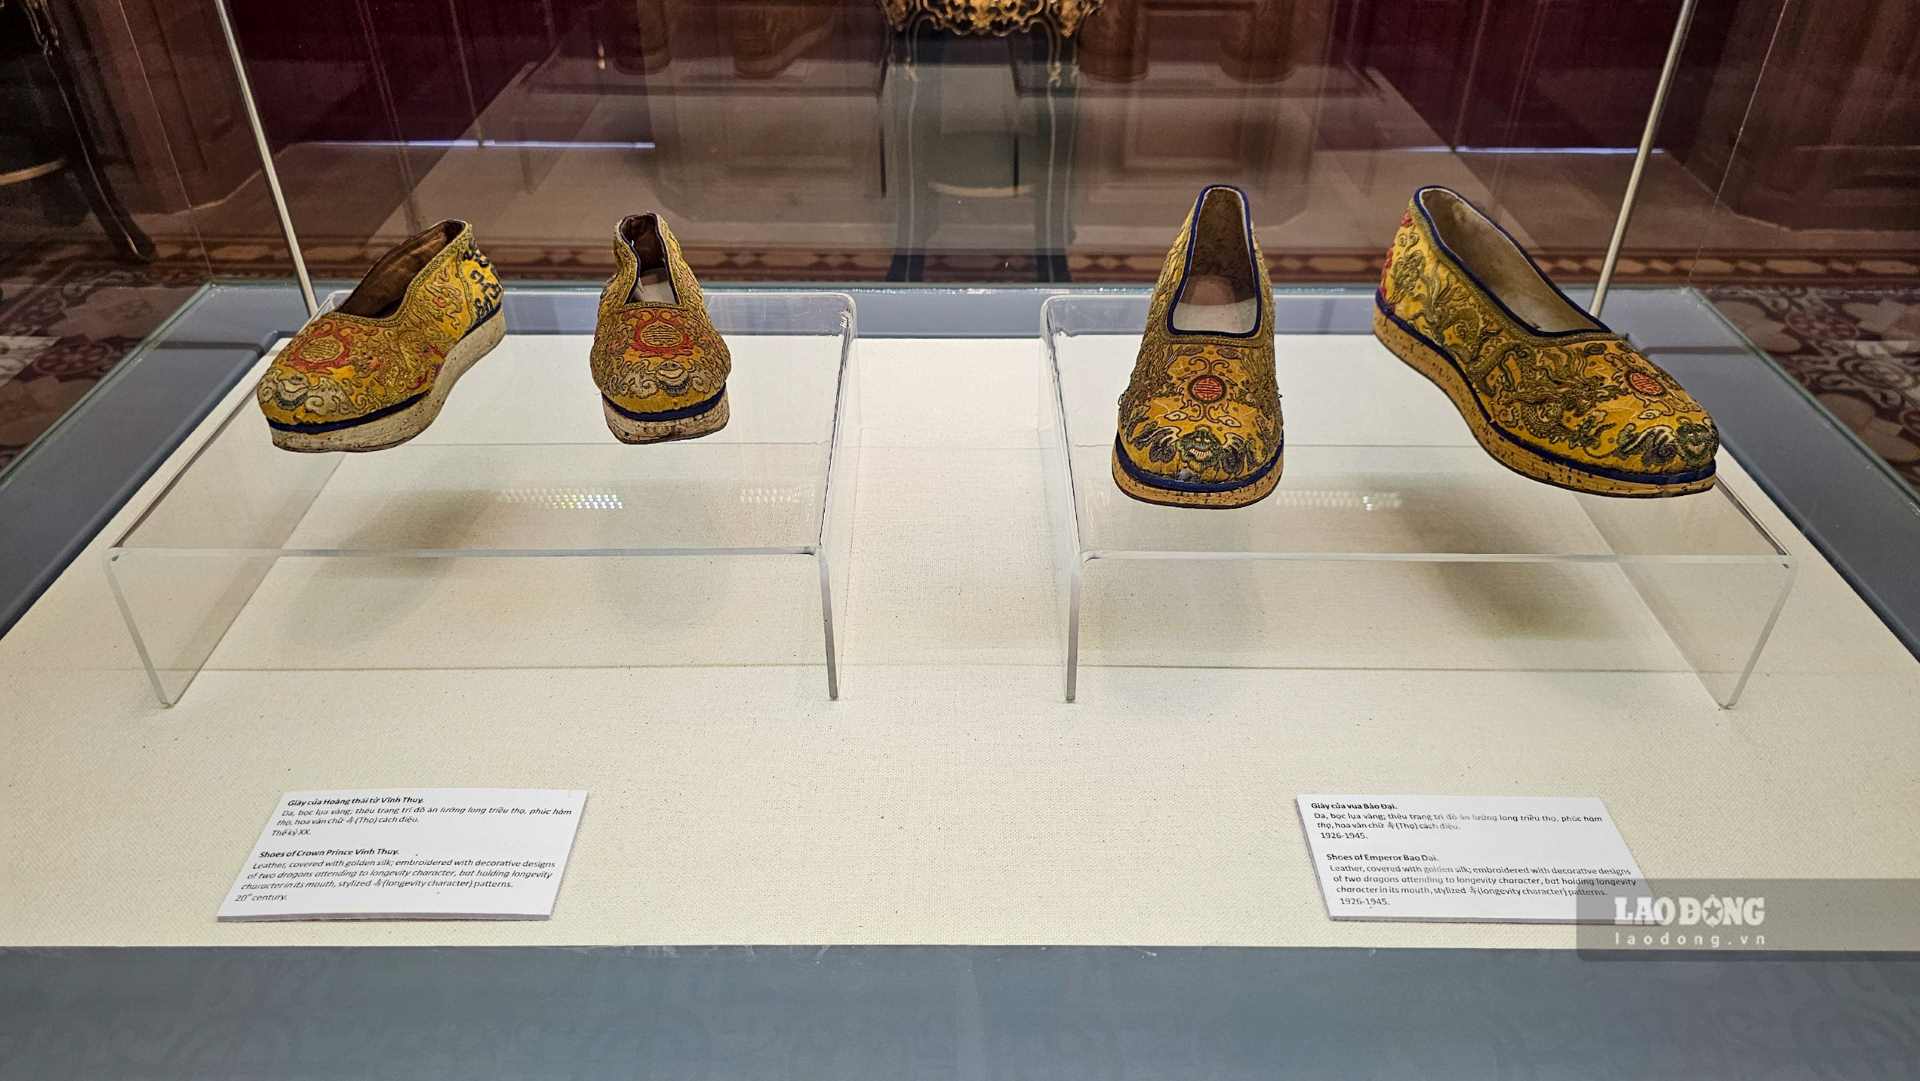 Giày của vua Bảo Đại (phải) và giày của Hoàng thái tử Vĩnh Thụy (trái) được làm từ da, bọc lụa vàng, thêu trang trí đồ án lưỡng long triều thọ, phúc hàm thọ, hoa văn chữ (Thọ) cách điệu. 